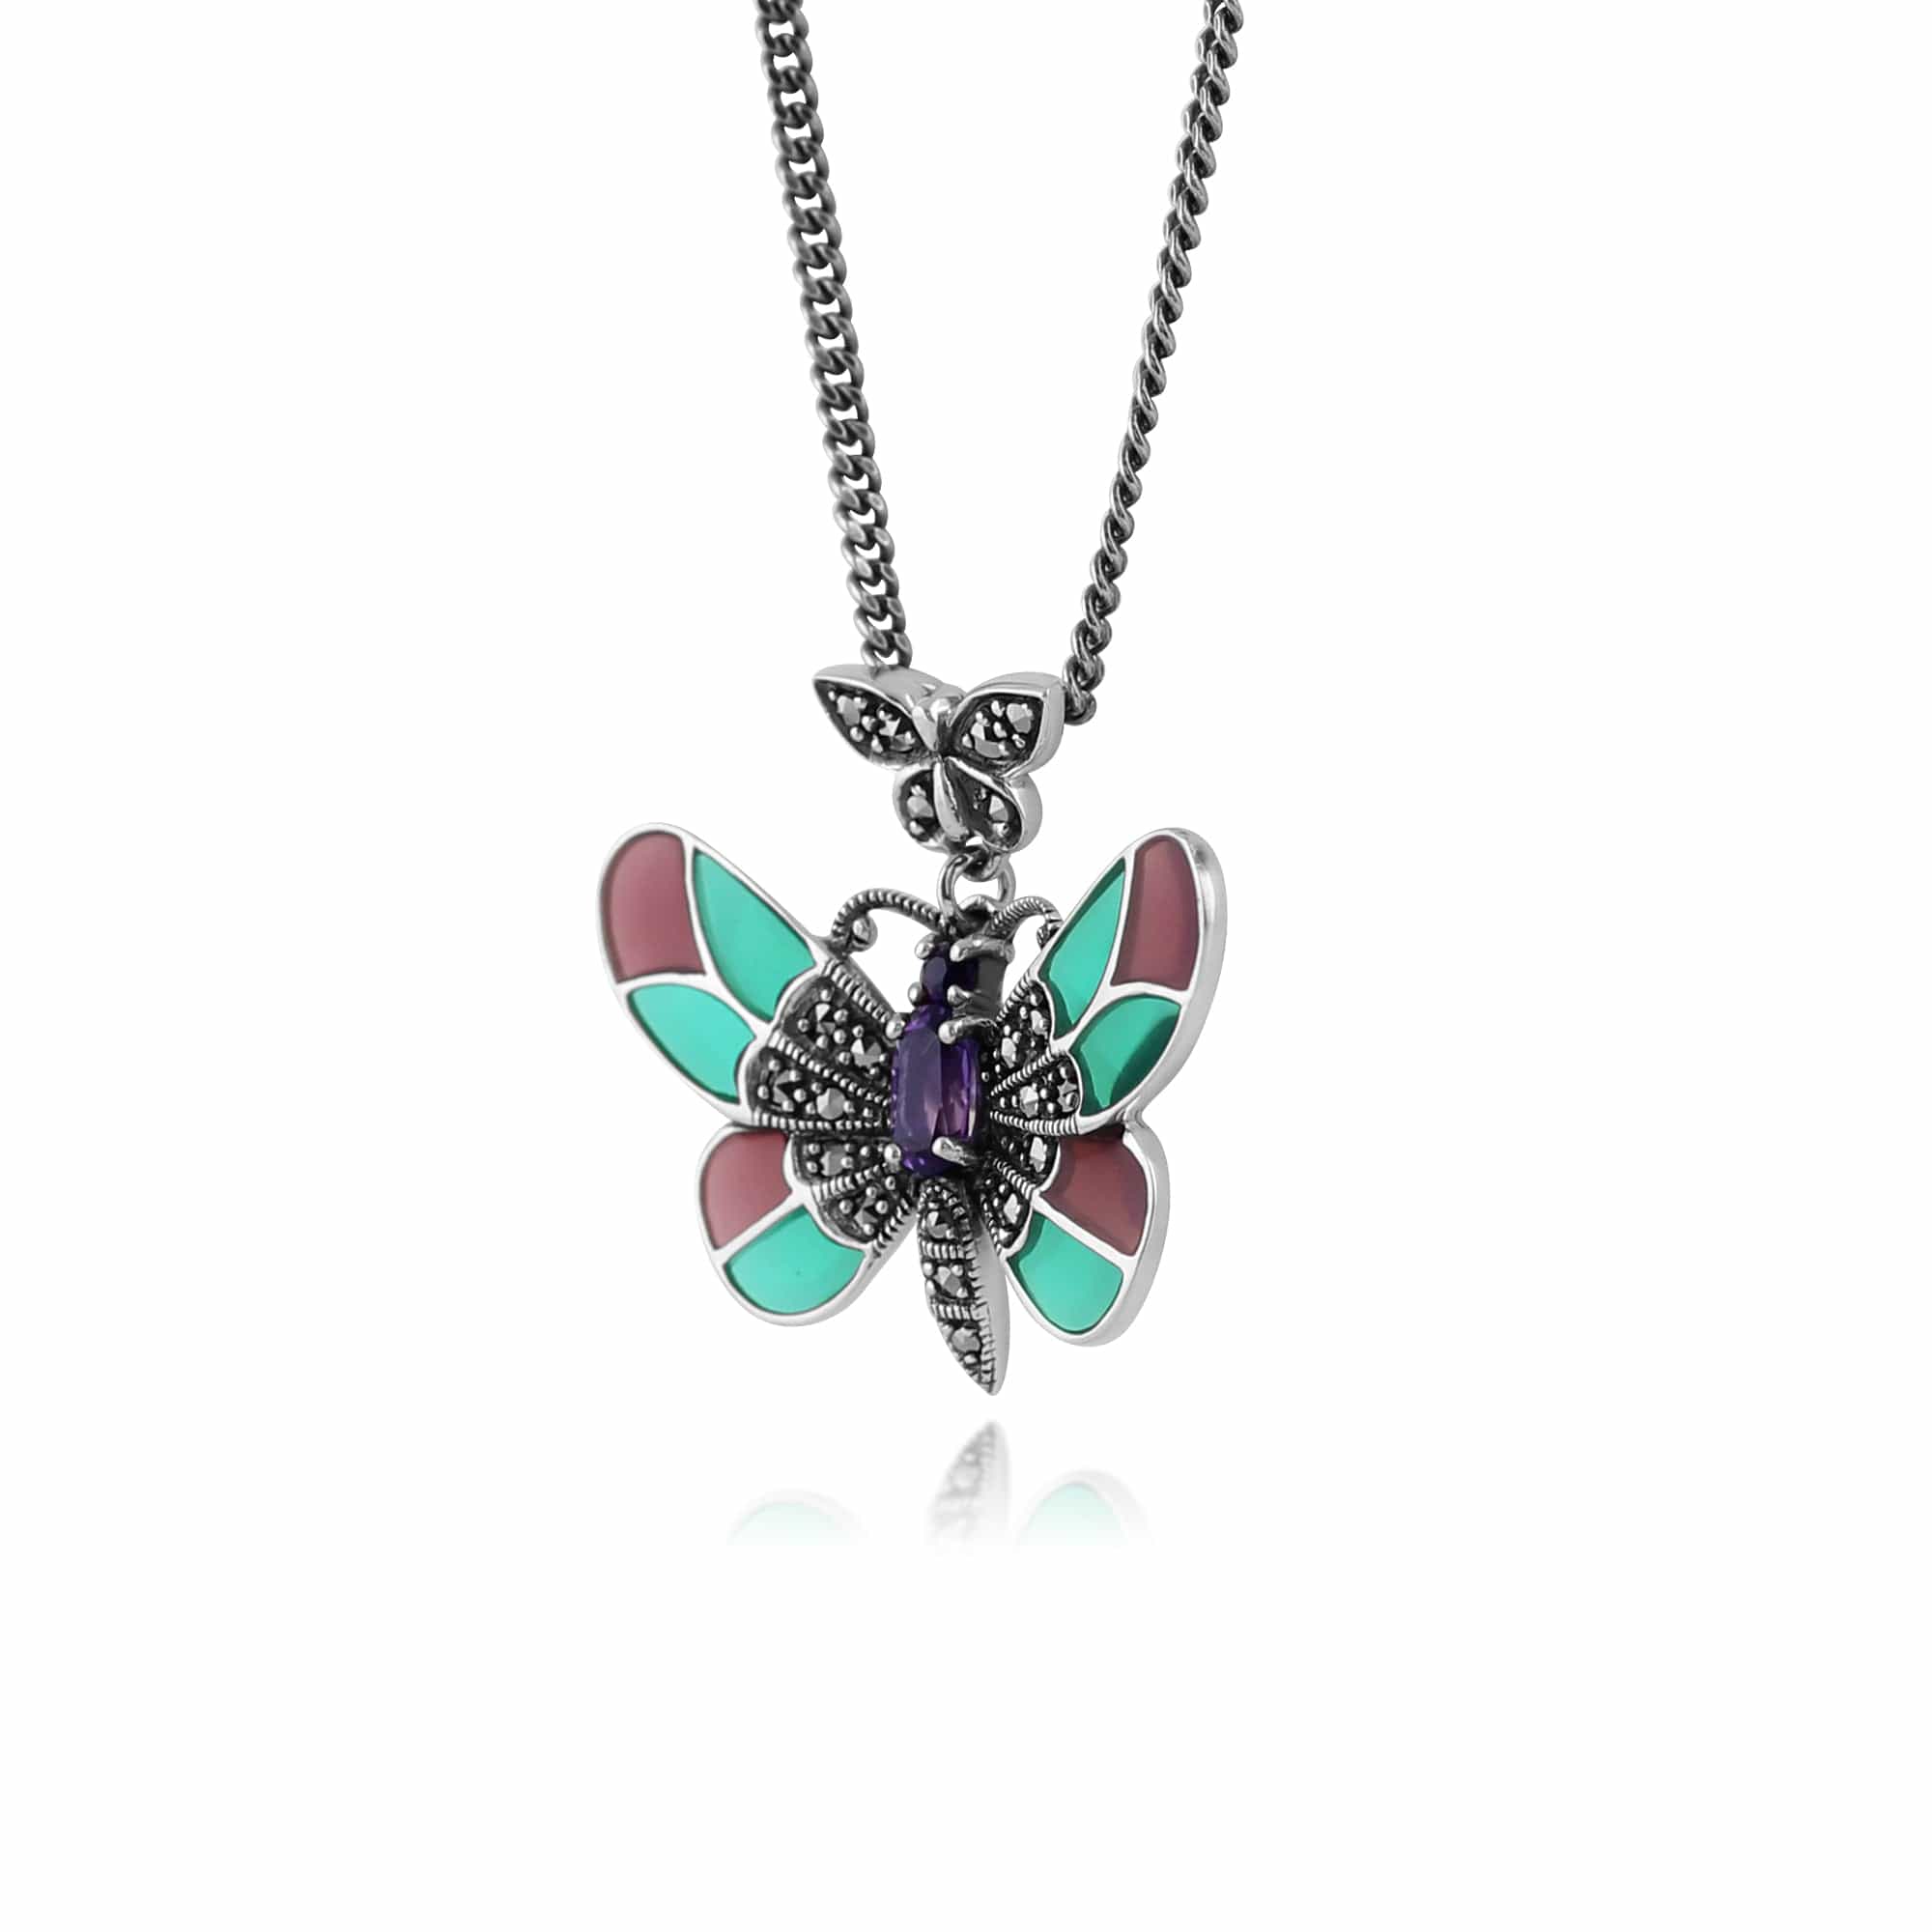 214N634301925 Art Nouveau Style Oval Amethyst, Marcasite & Enamel Butterfly Necklace in 925 Sterling Silver 2